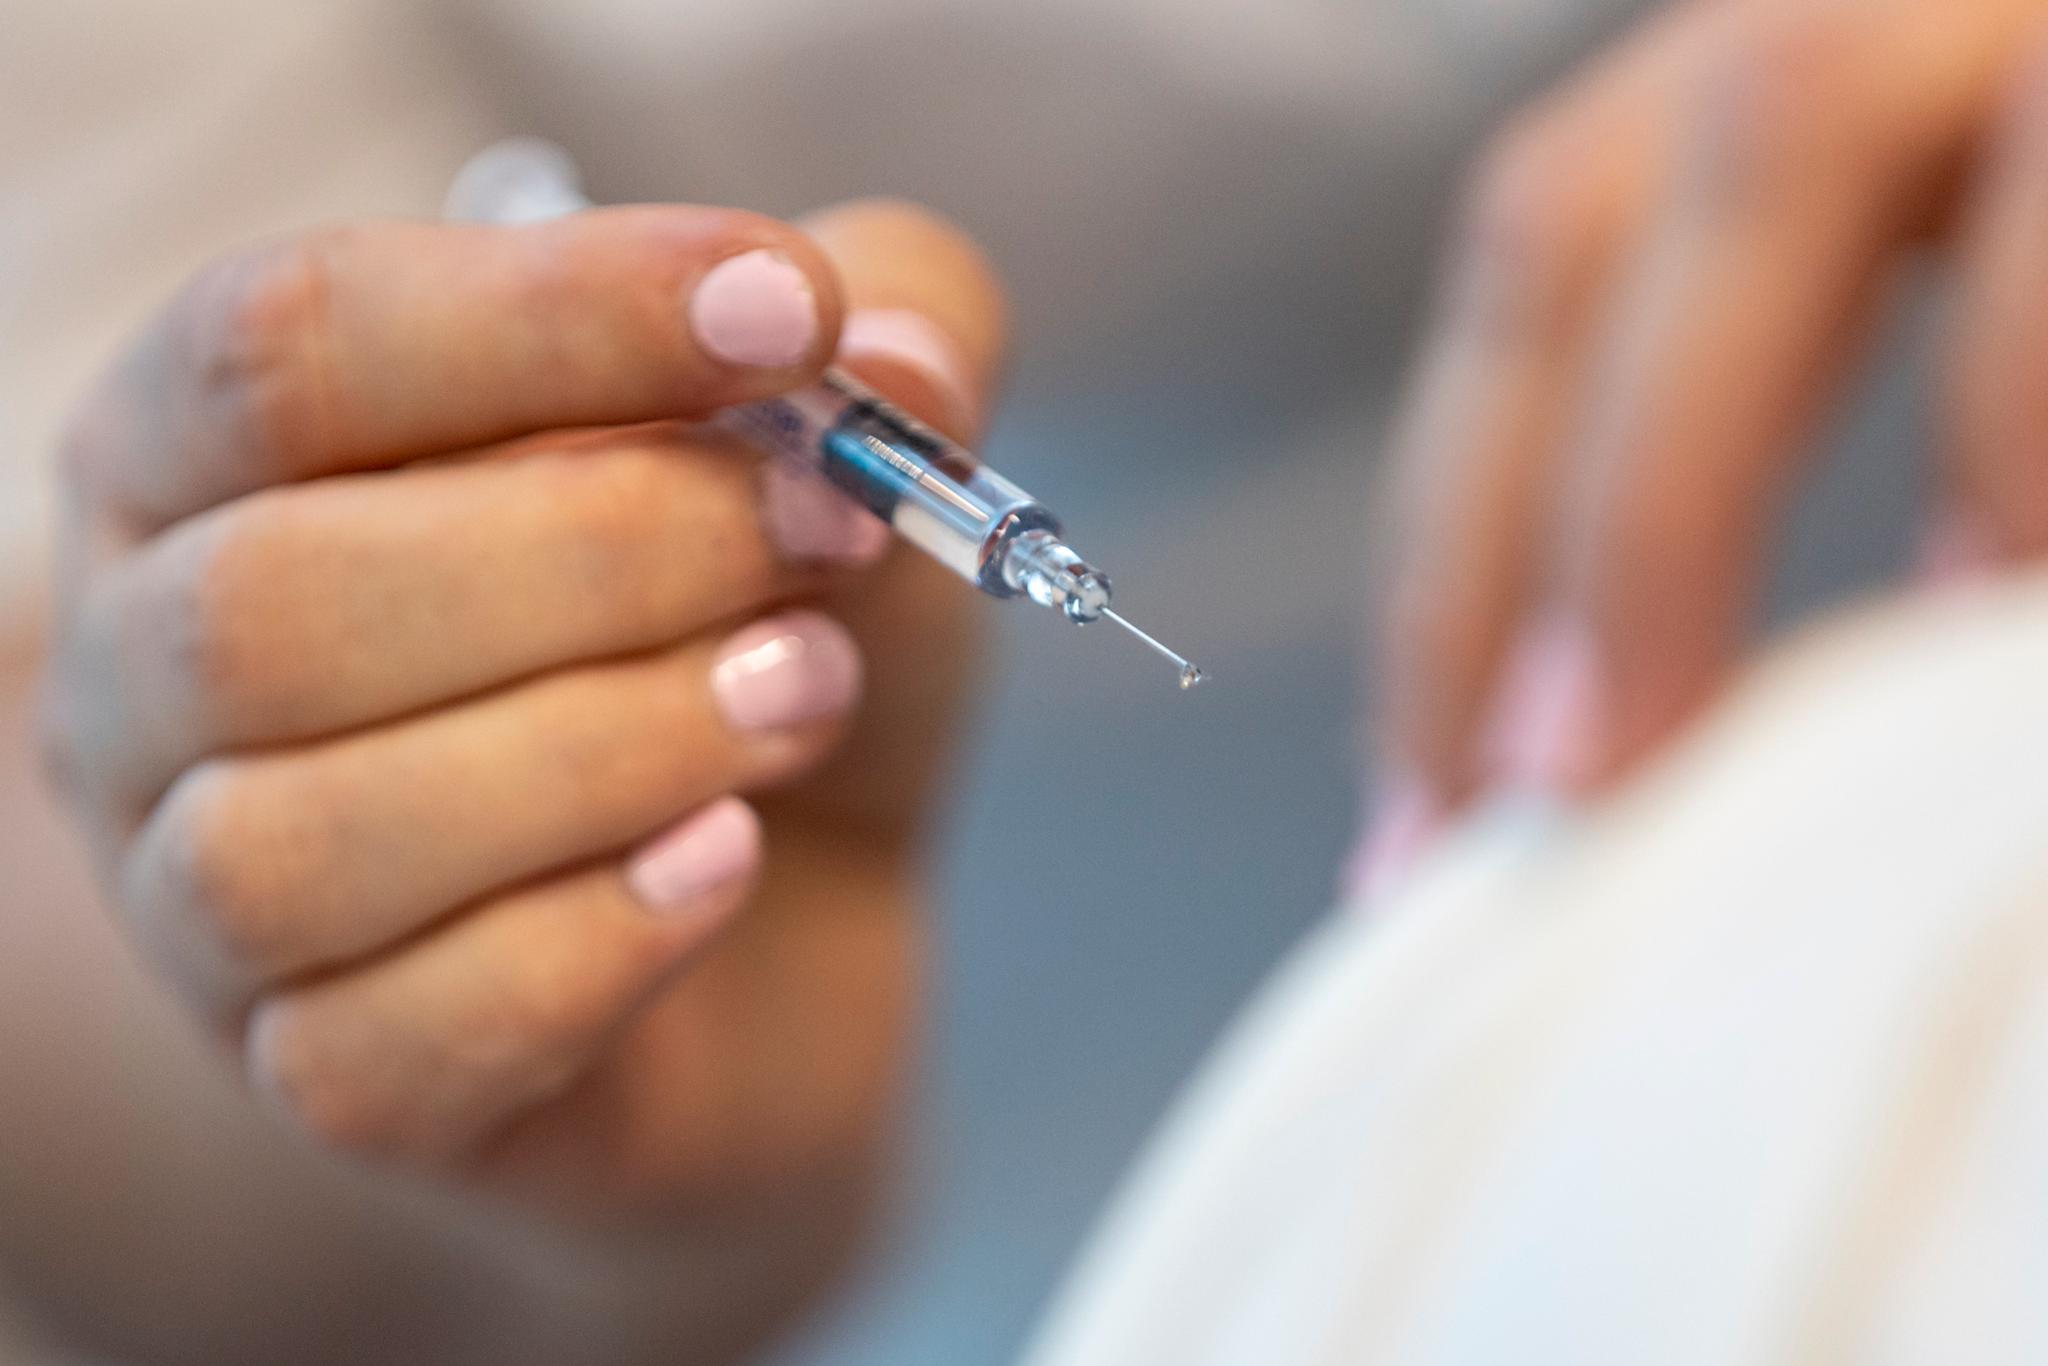 Influensaen er i full gang i Norge. Men vaksinen ser ikke ut til å beskytte godt mot å bli smittet i år. Du vil likevel få beskyttelse mot å bli alvorlig syk.